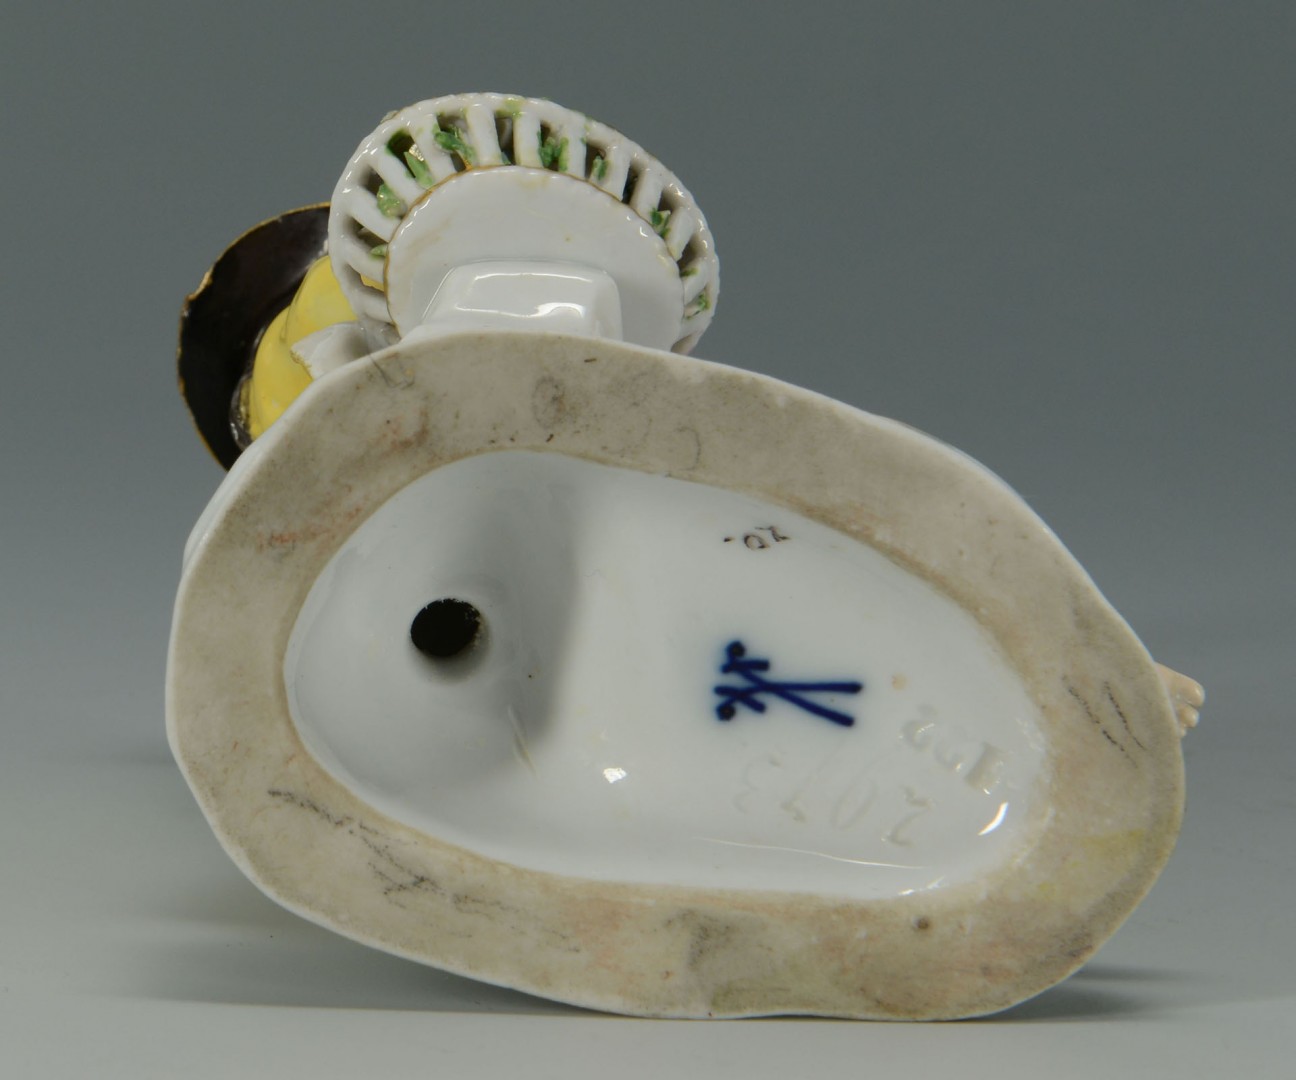 Lot 134: Meissen Porcelain Figure of Man w/ Rooster